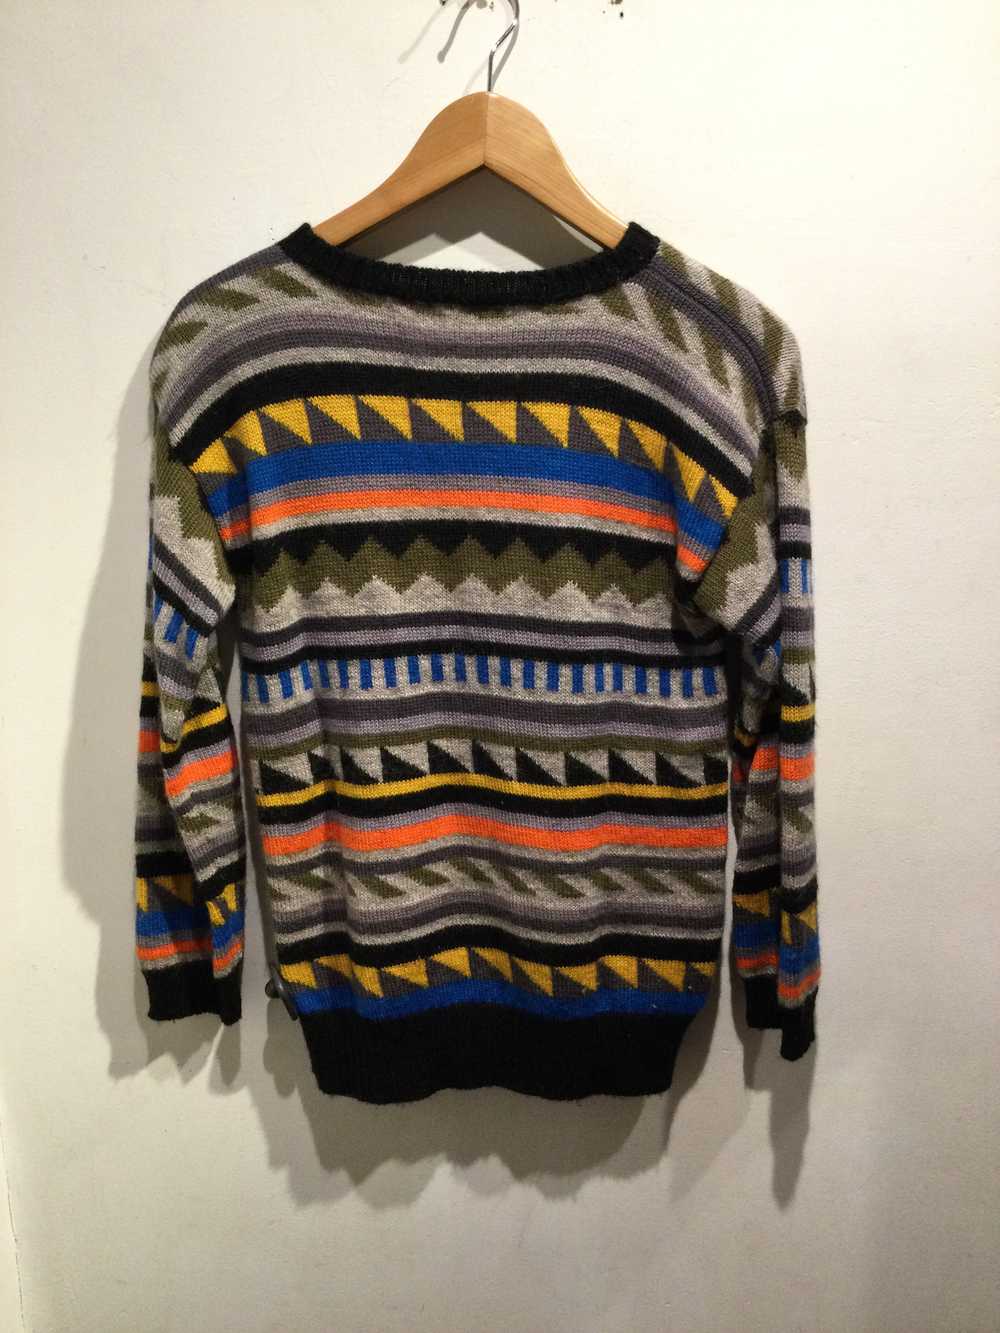 Kansai Yamamoto march striped wool sweater - image 5